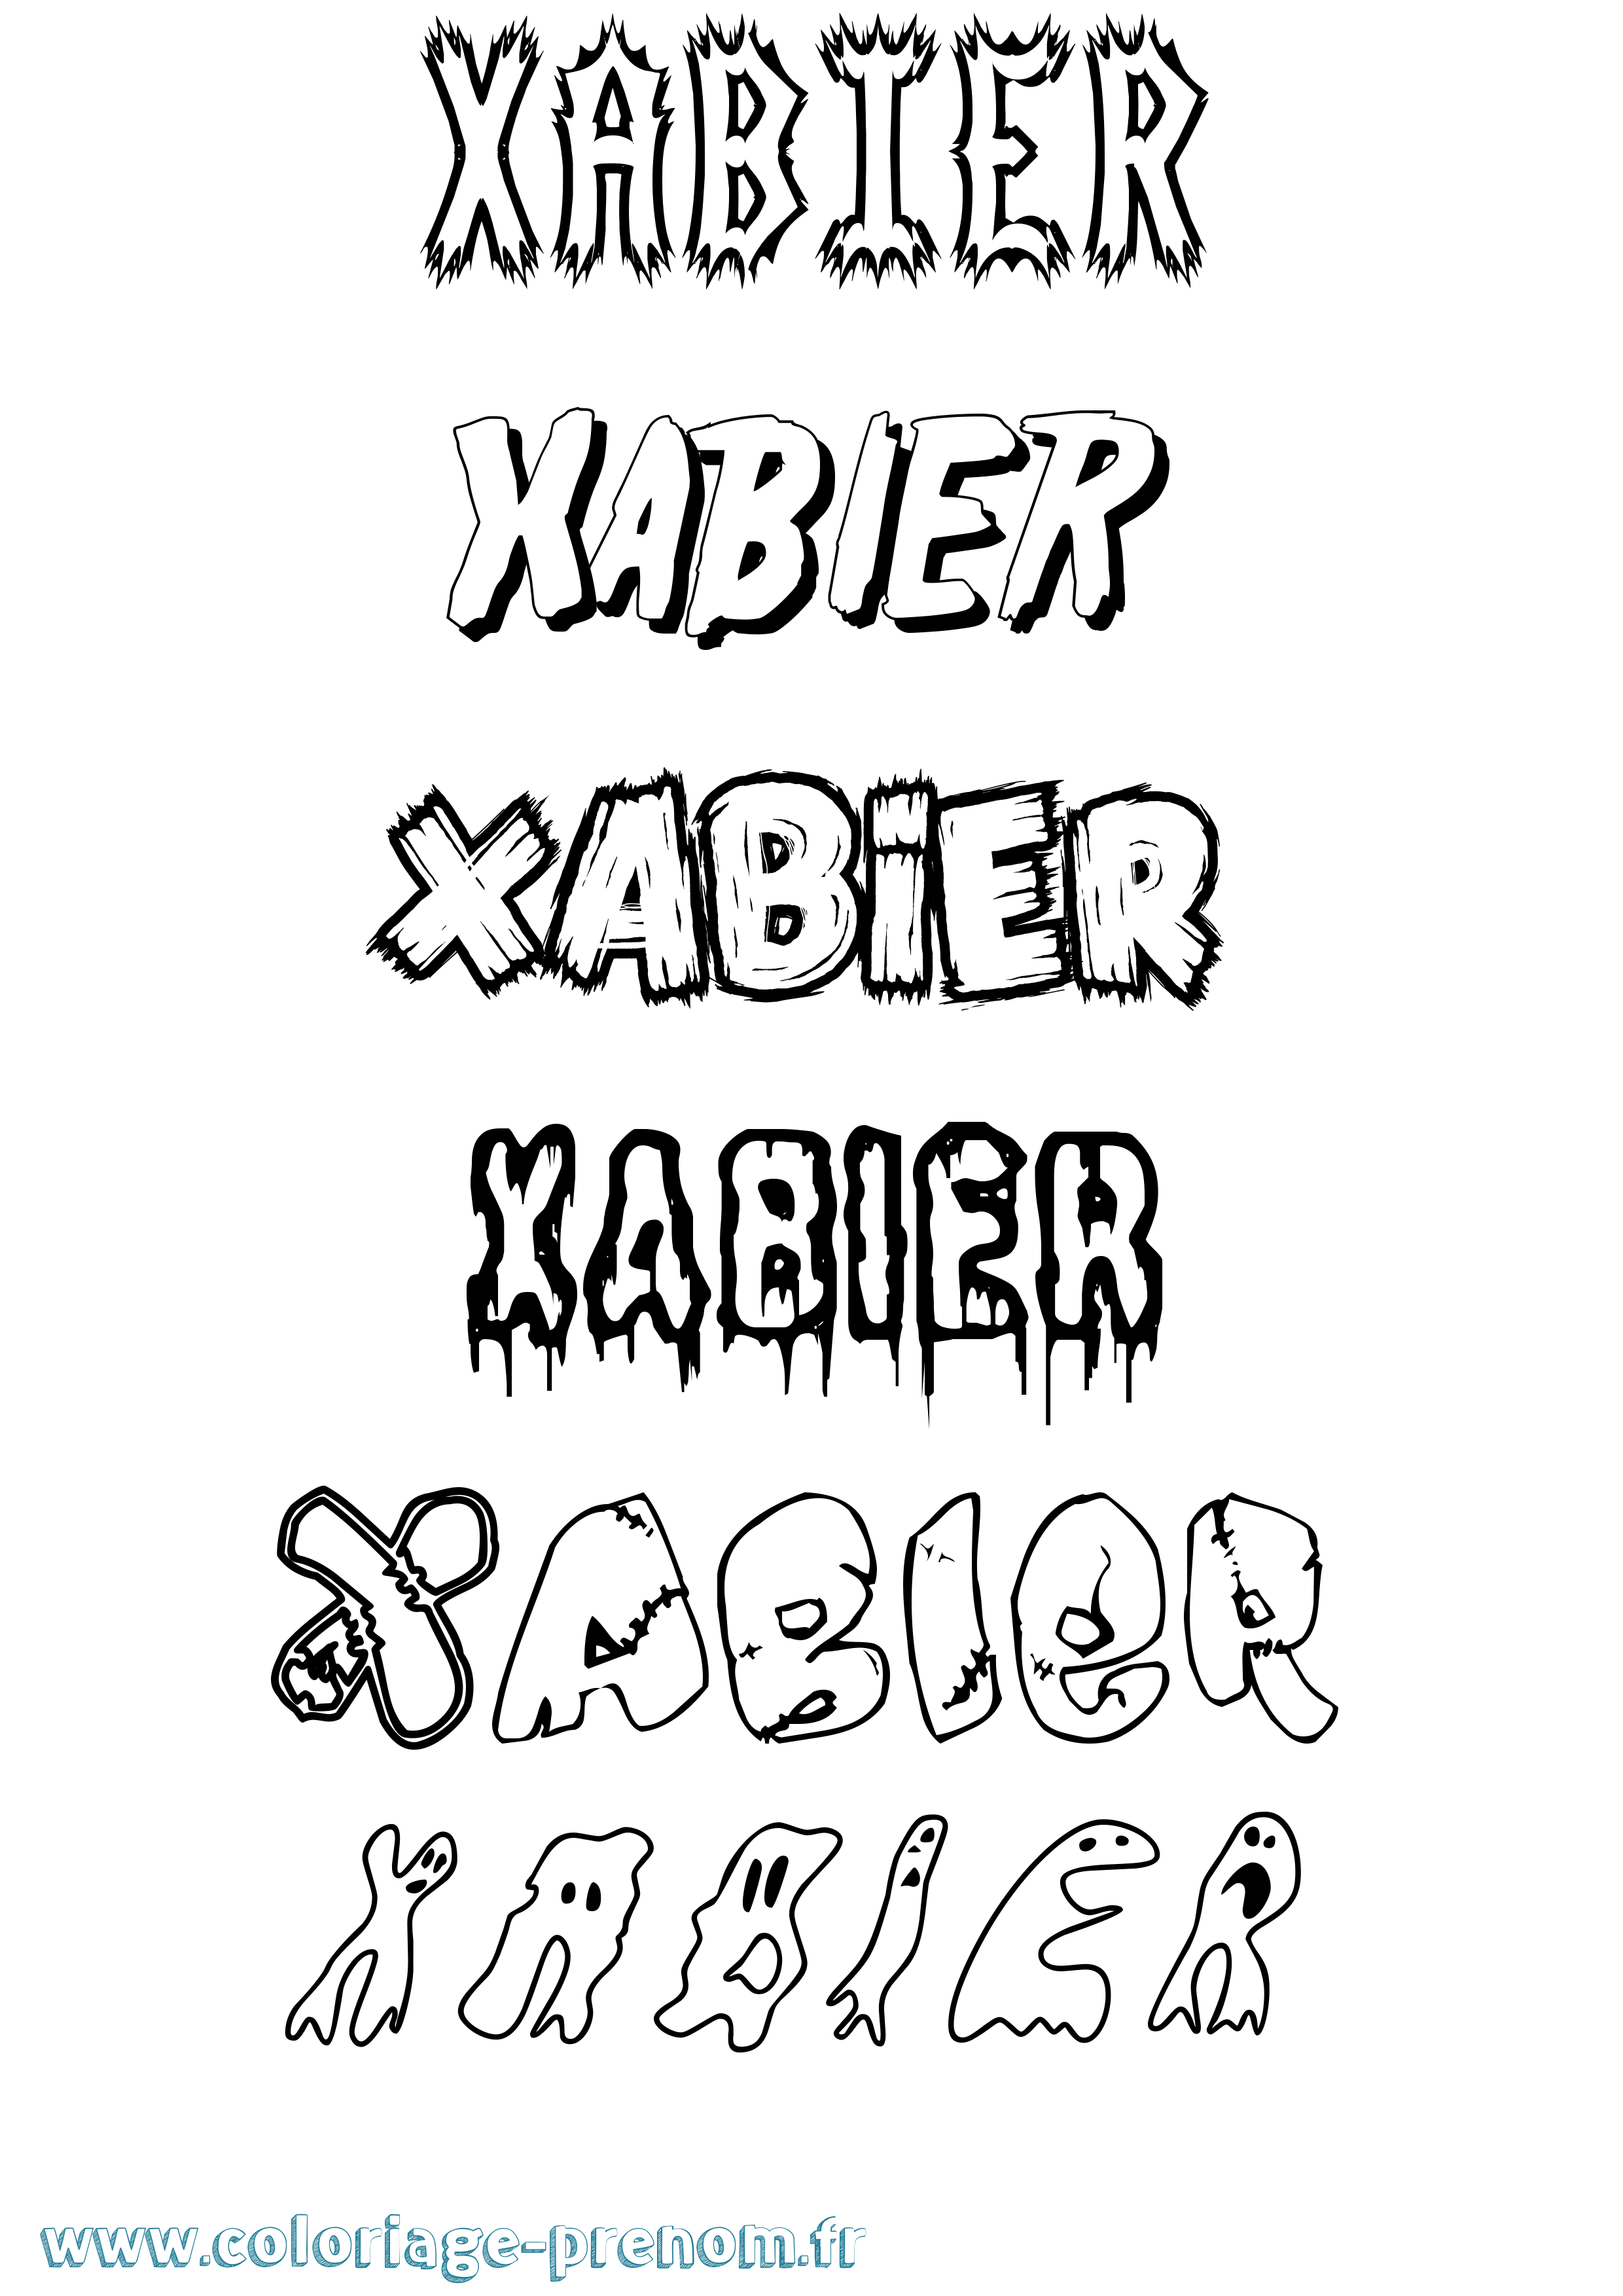 Coloriage prénom Xabier Frisson